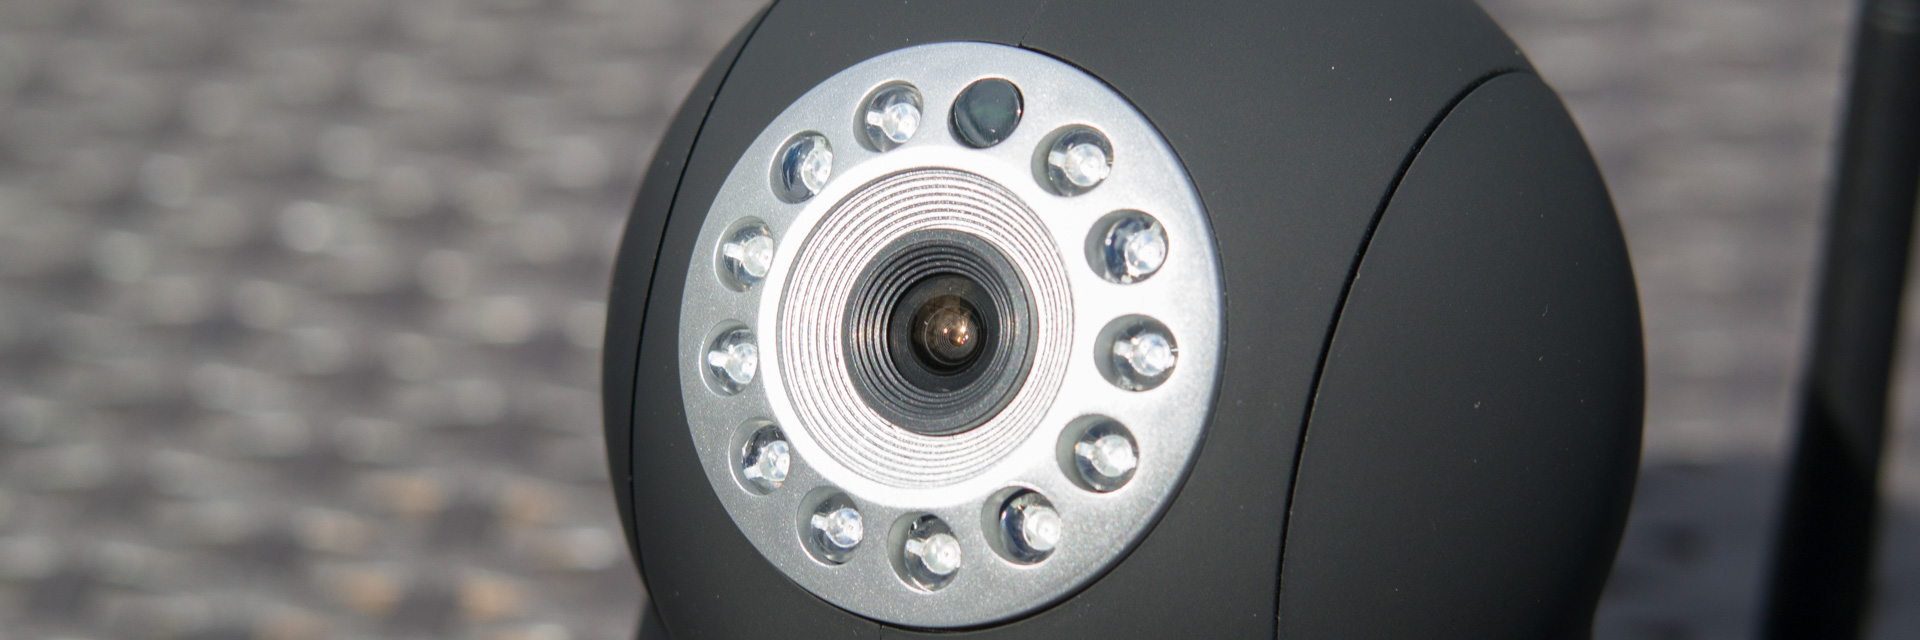 Günstige Überwachungskamera im Praxis Check HooToo HT-IP211HDP